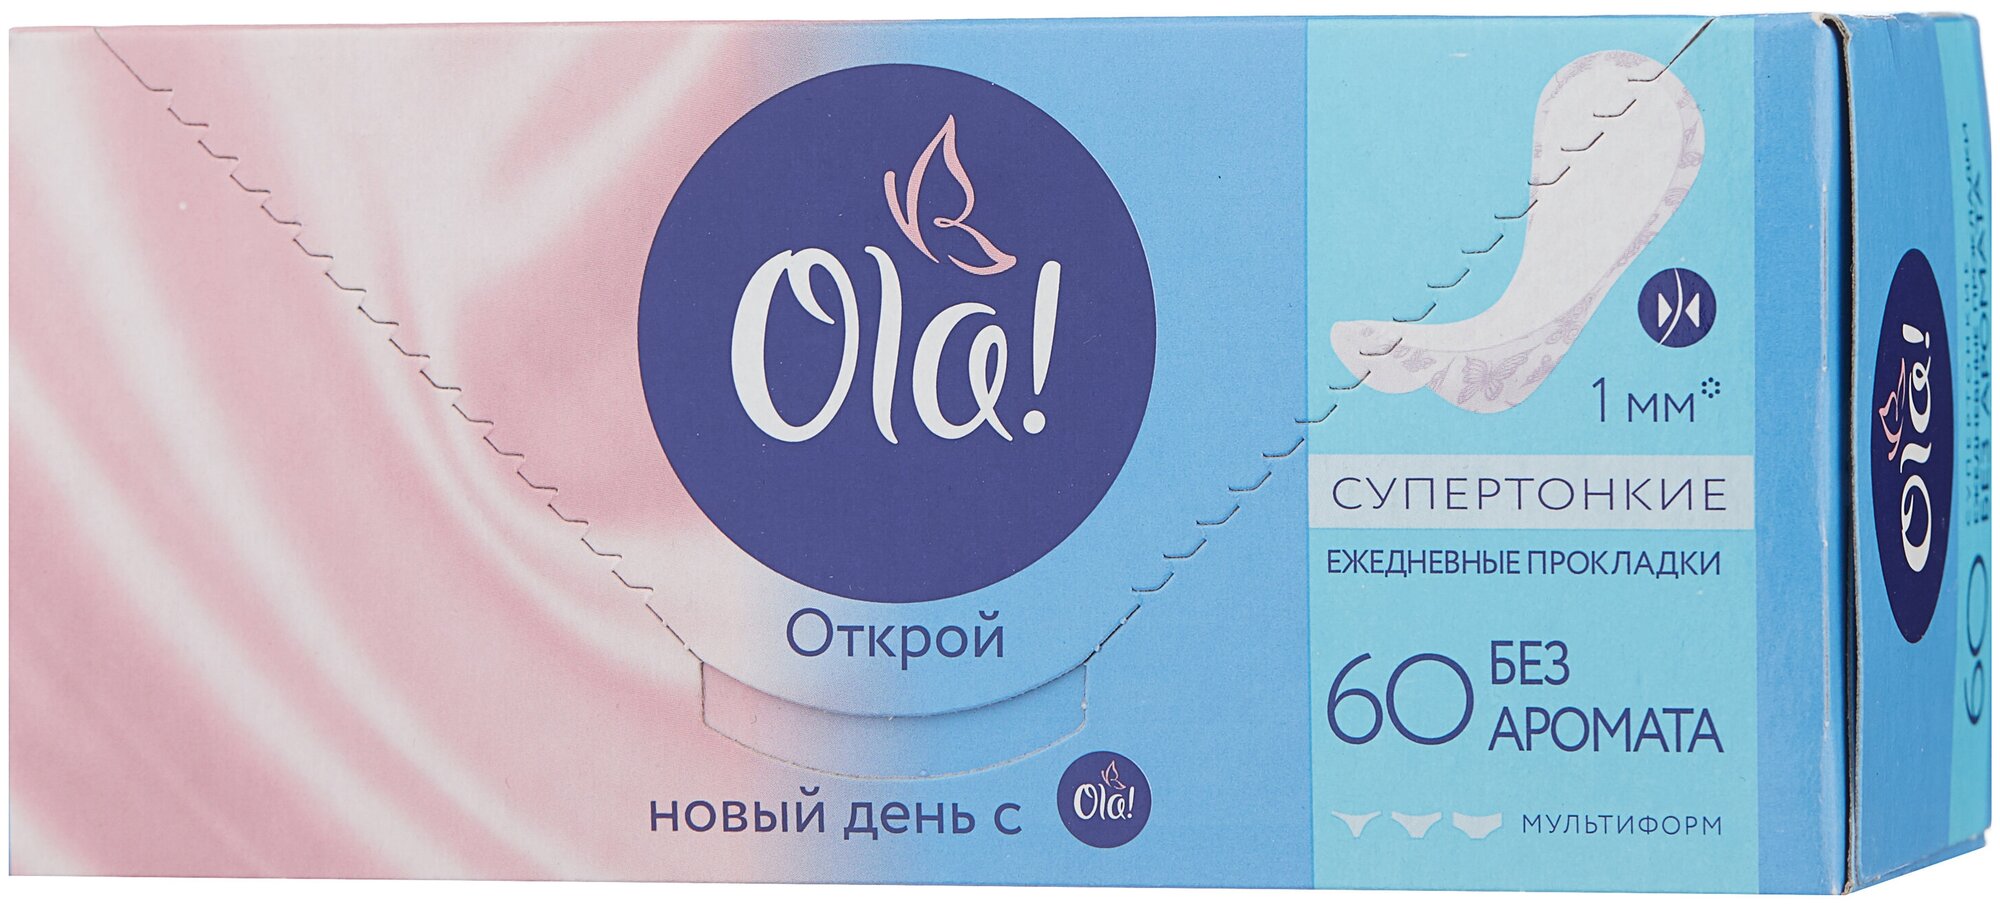 Ежедневные прокладки Ola! Light стринг-мультиформ, 60шт. - фото №16